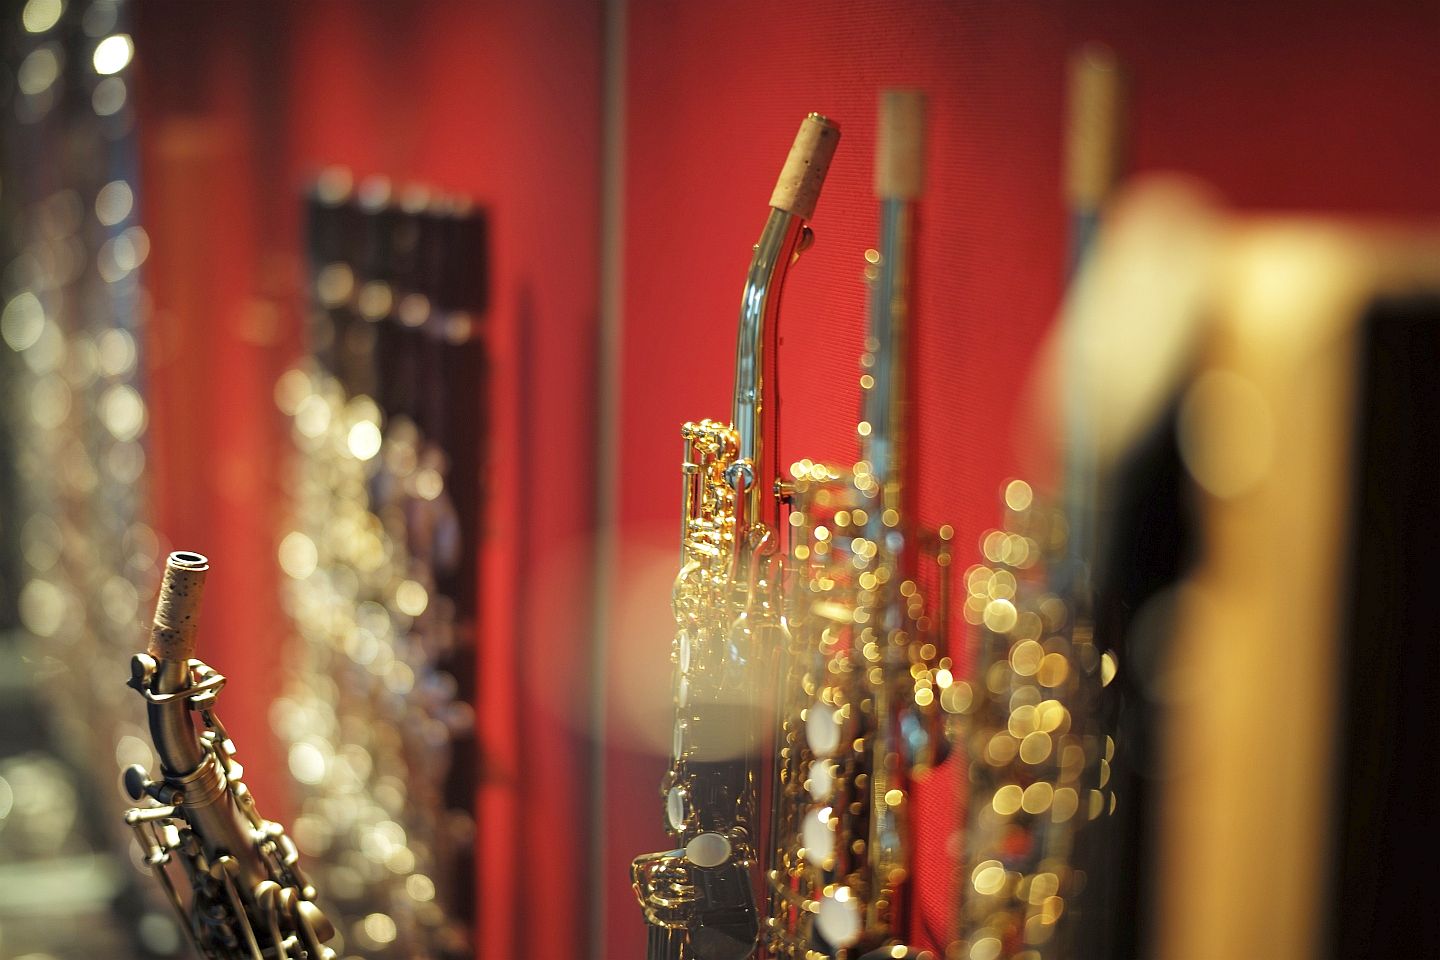 Unsere besten Produkte - Suchen Sie die Inderbinen saxophon Ihren Wünschen entsprechend